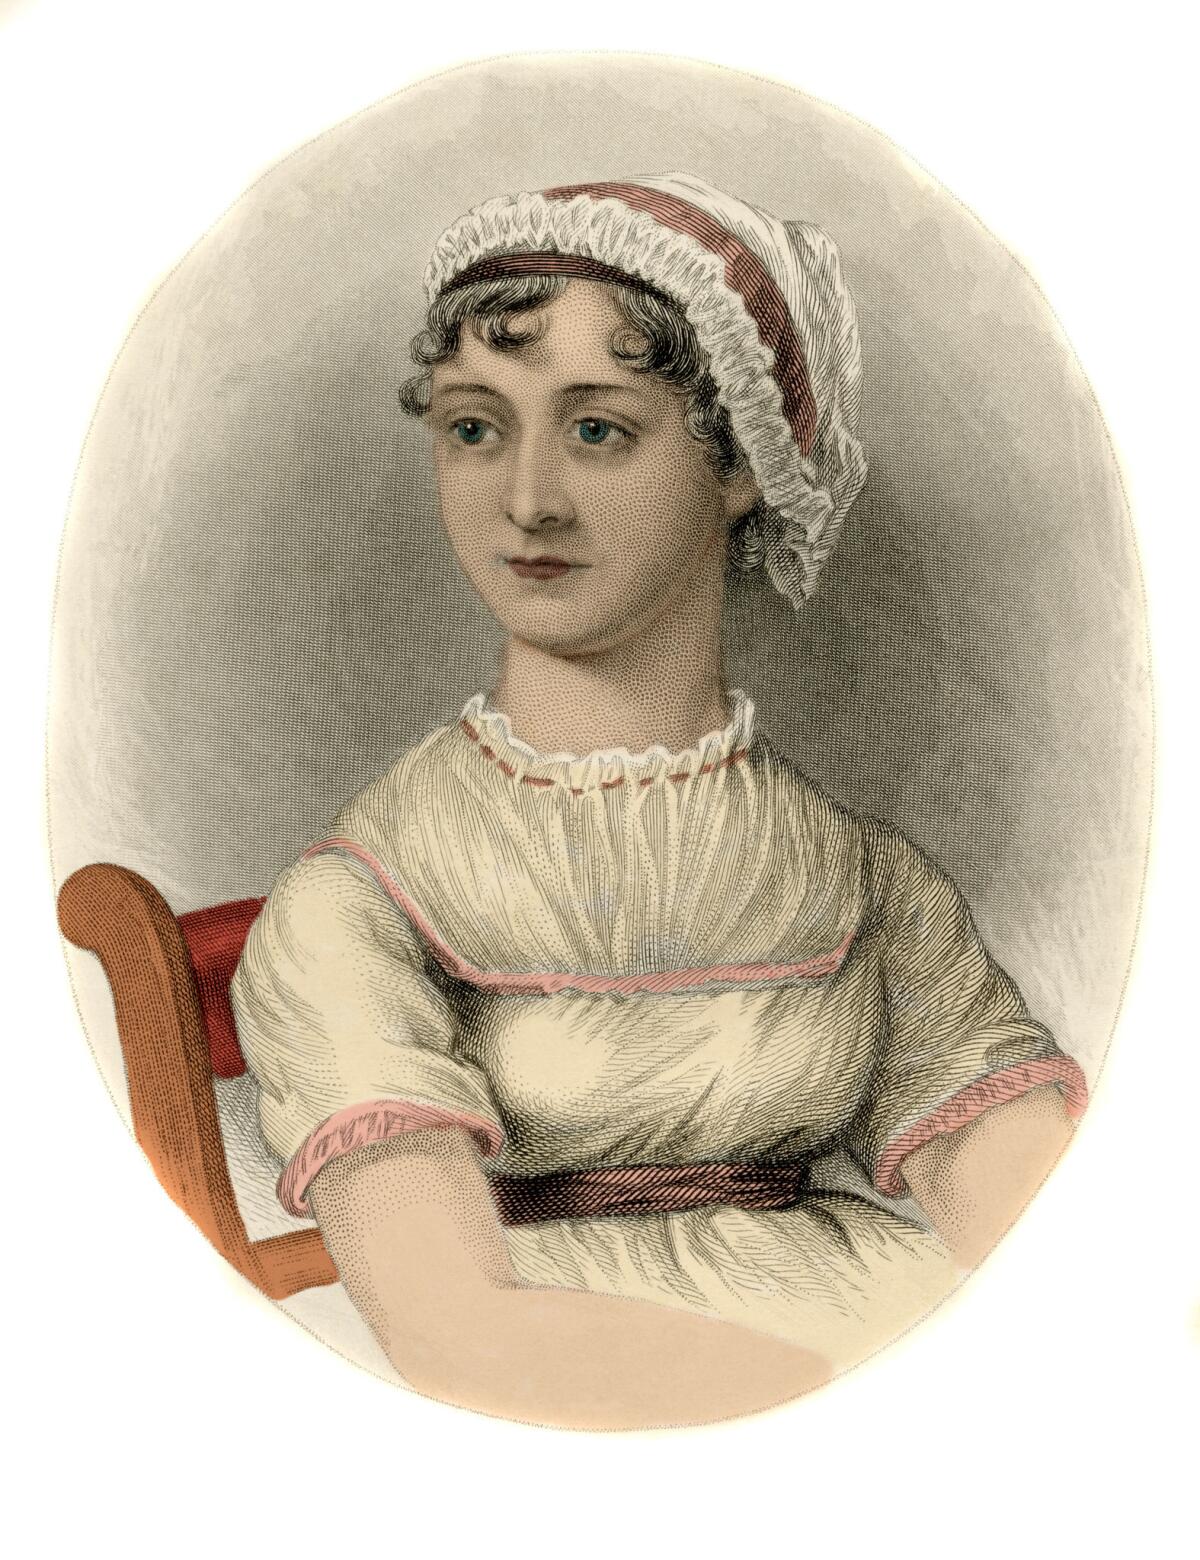 A portrait of English writer Jane Austen.